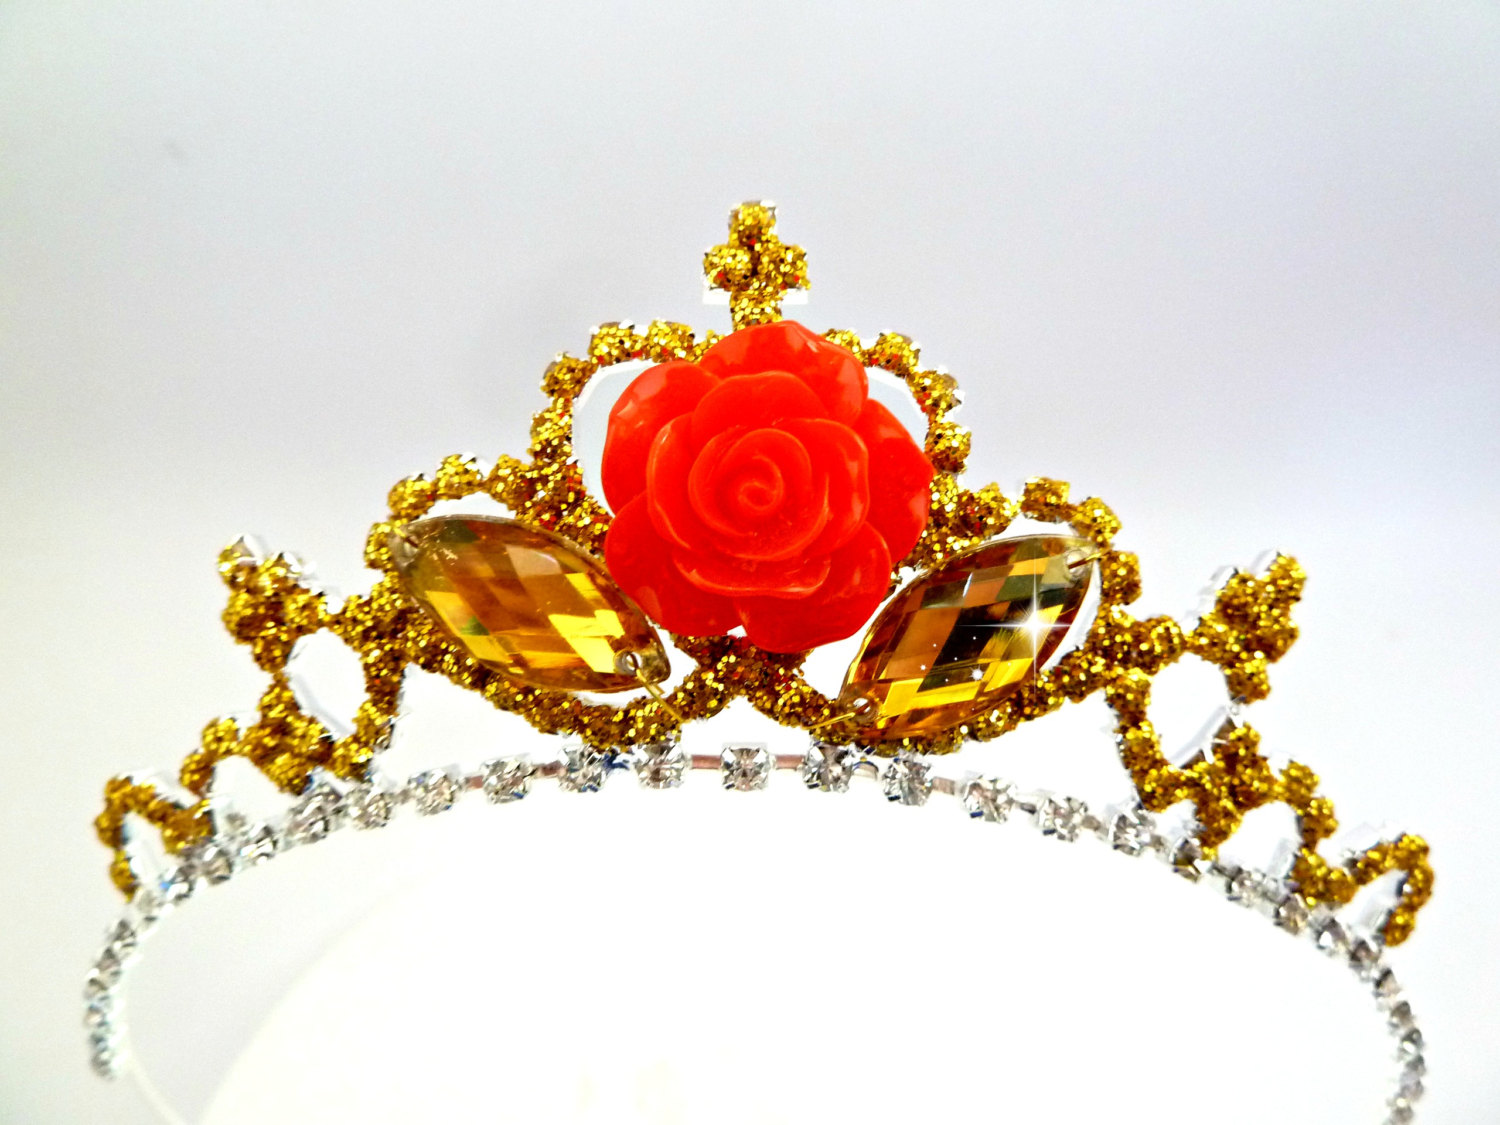 belle clipart crown